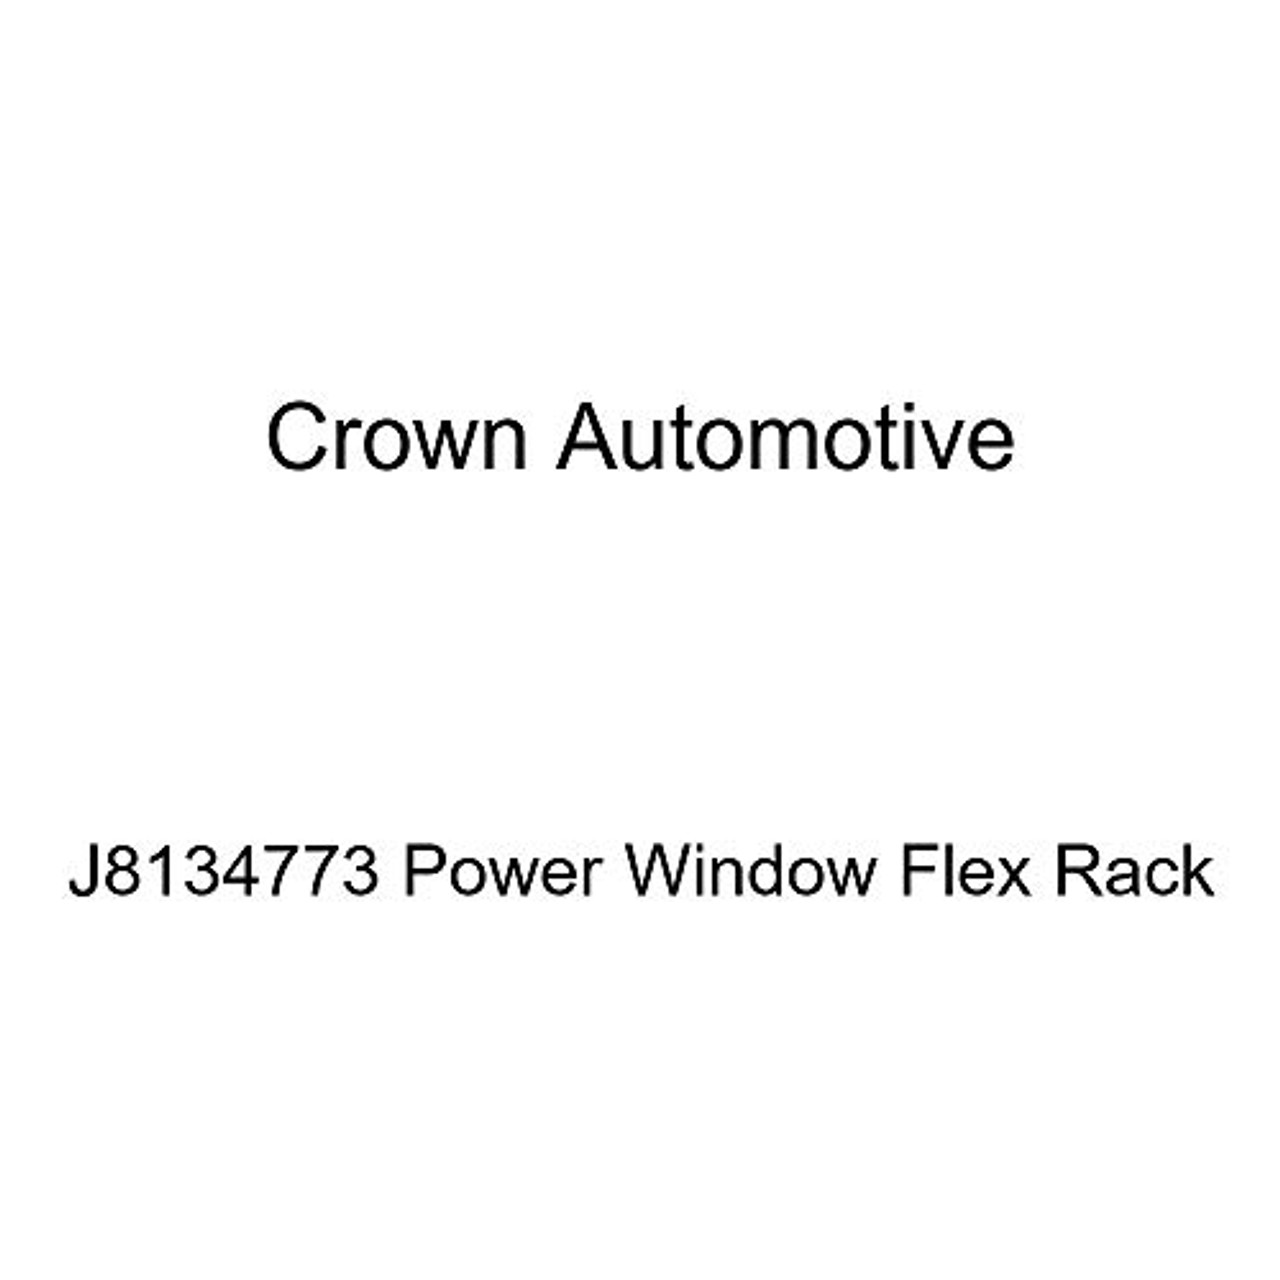 Crown Automotive J8134773